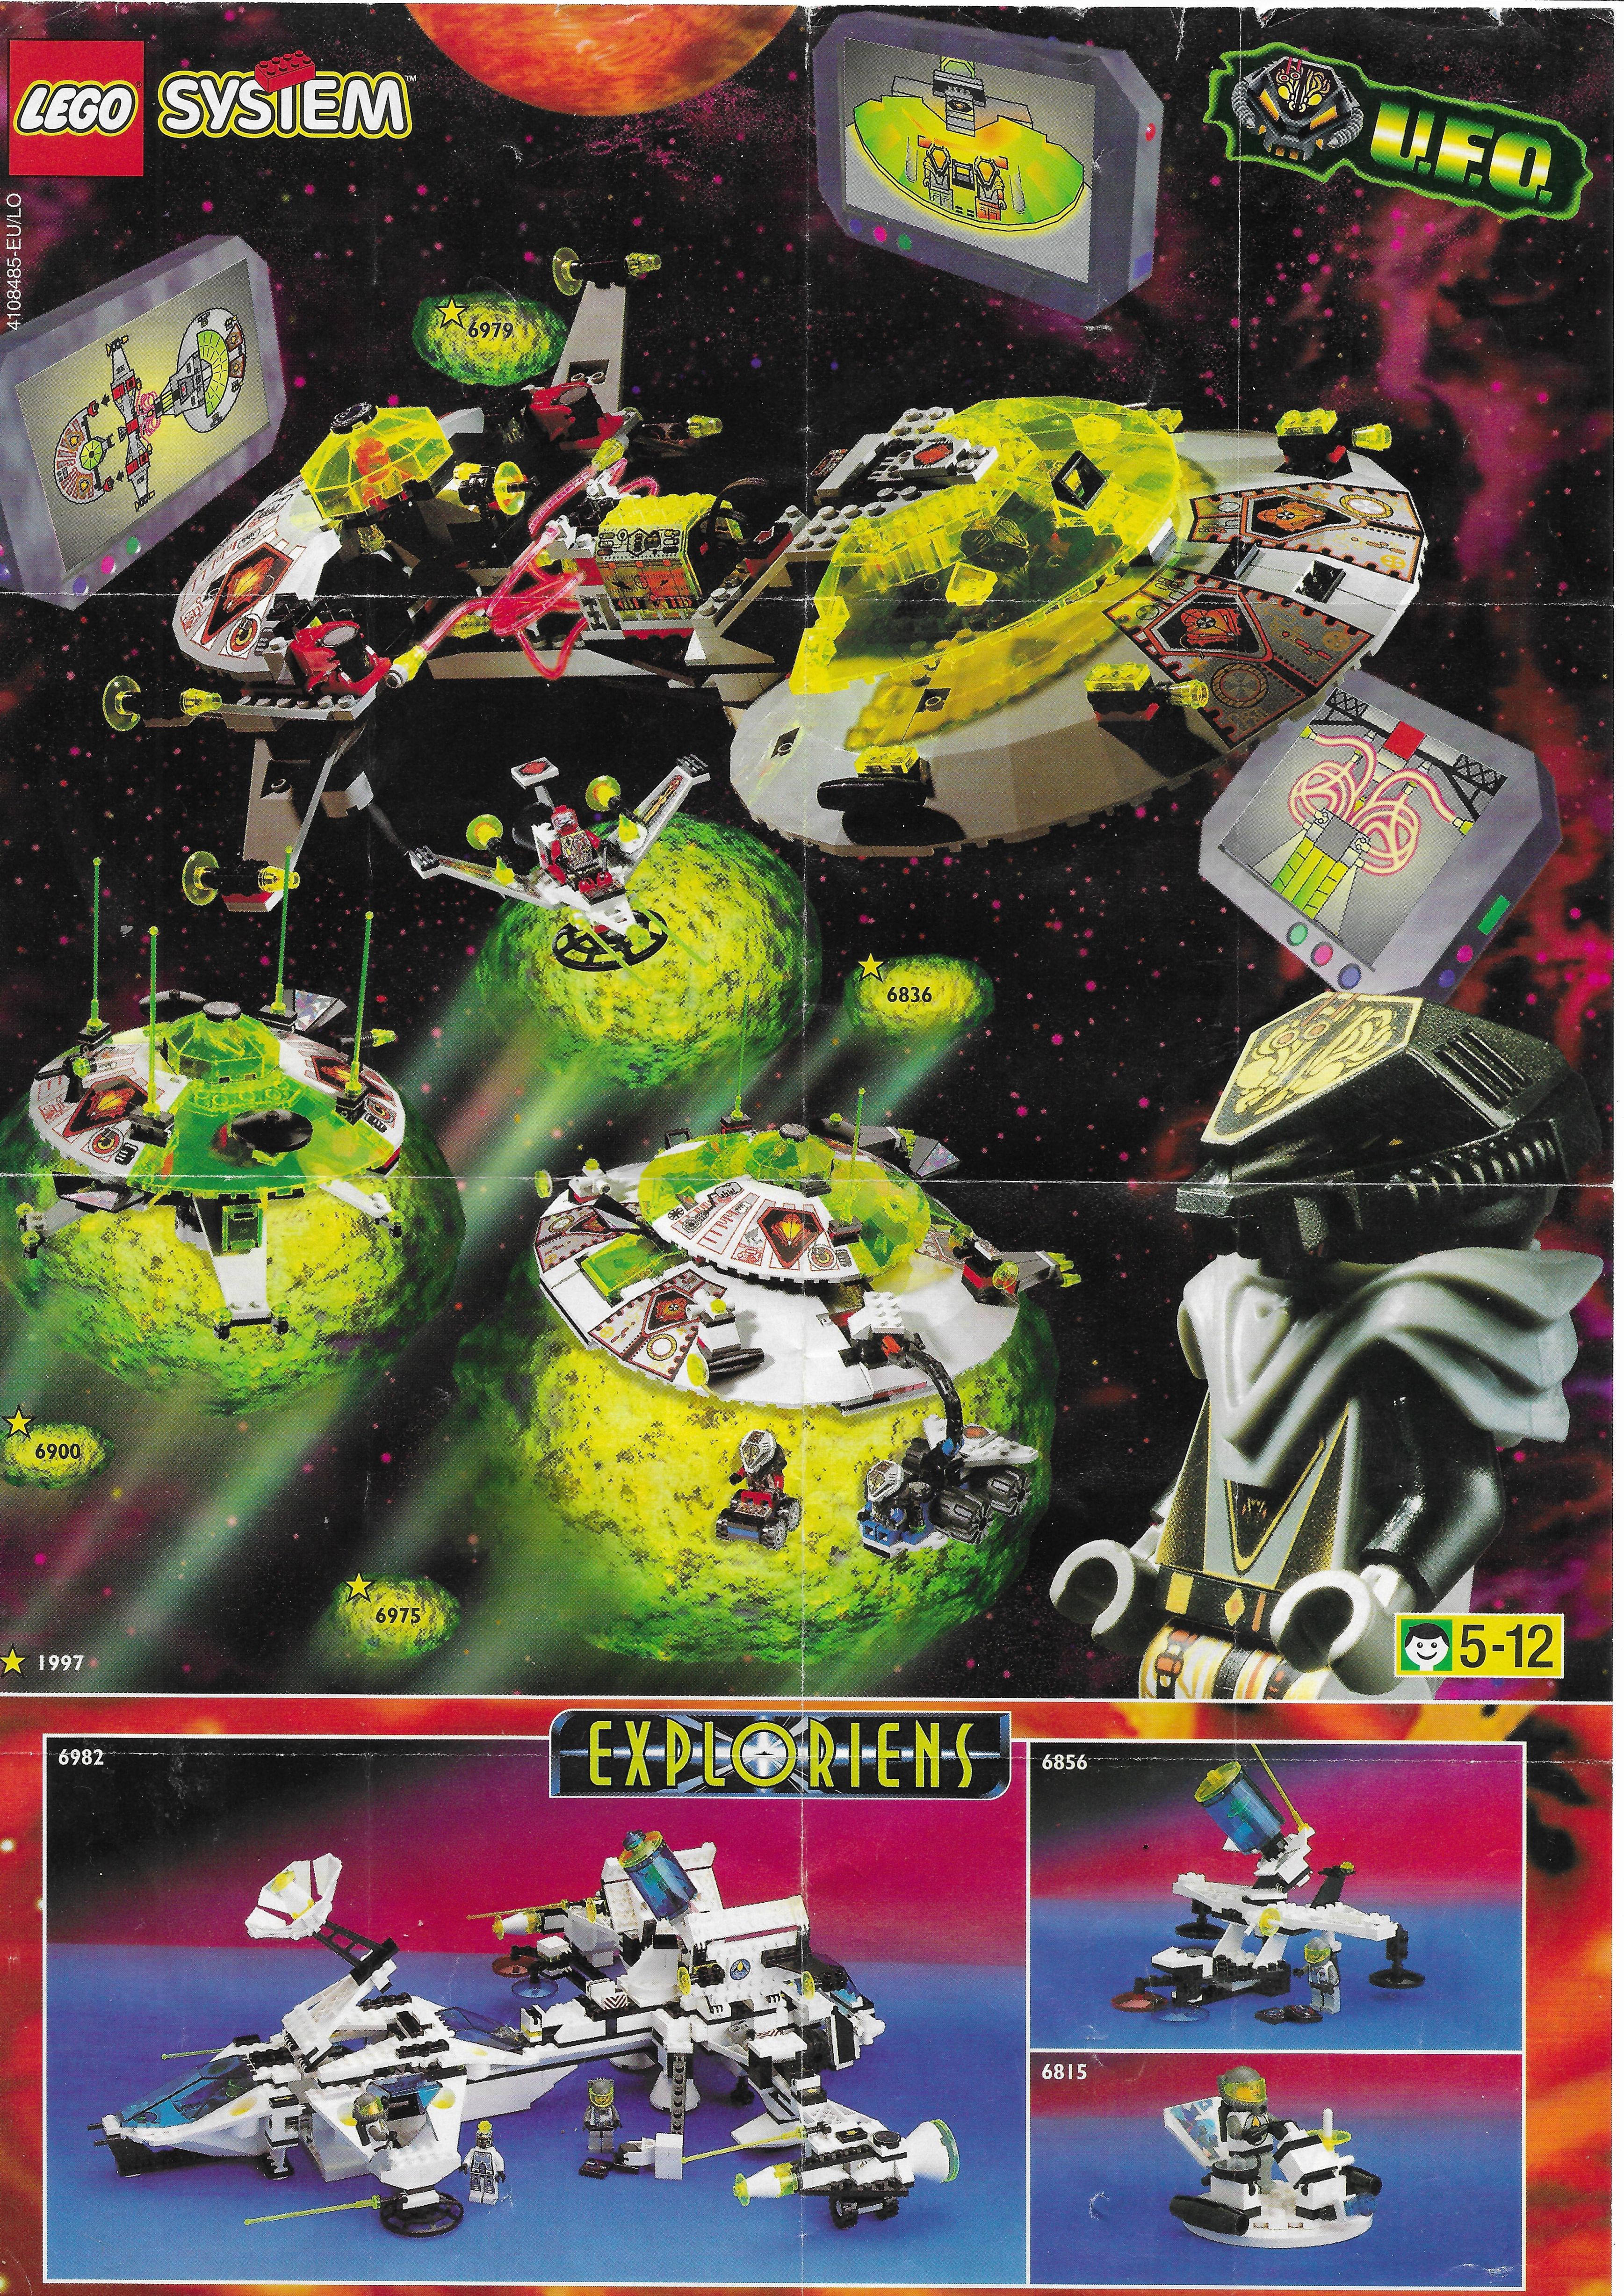 1997-es Lego Exploriens / Ufo insert